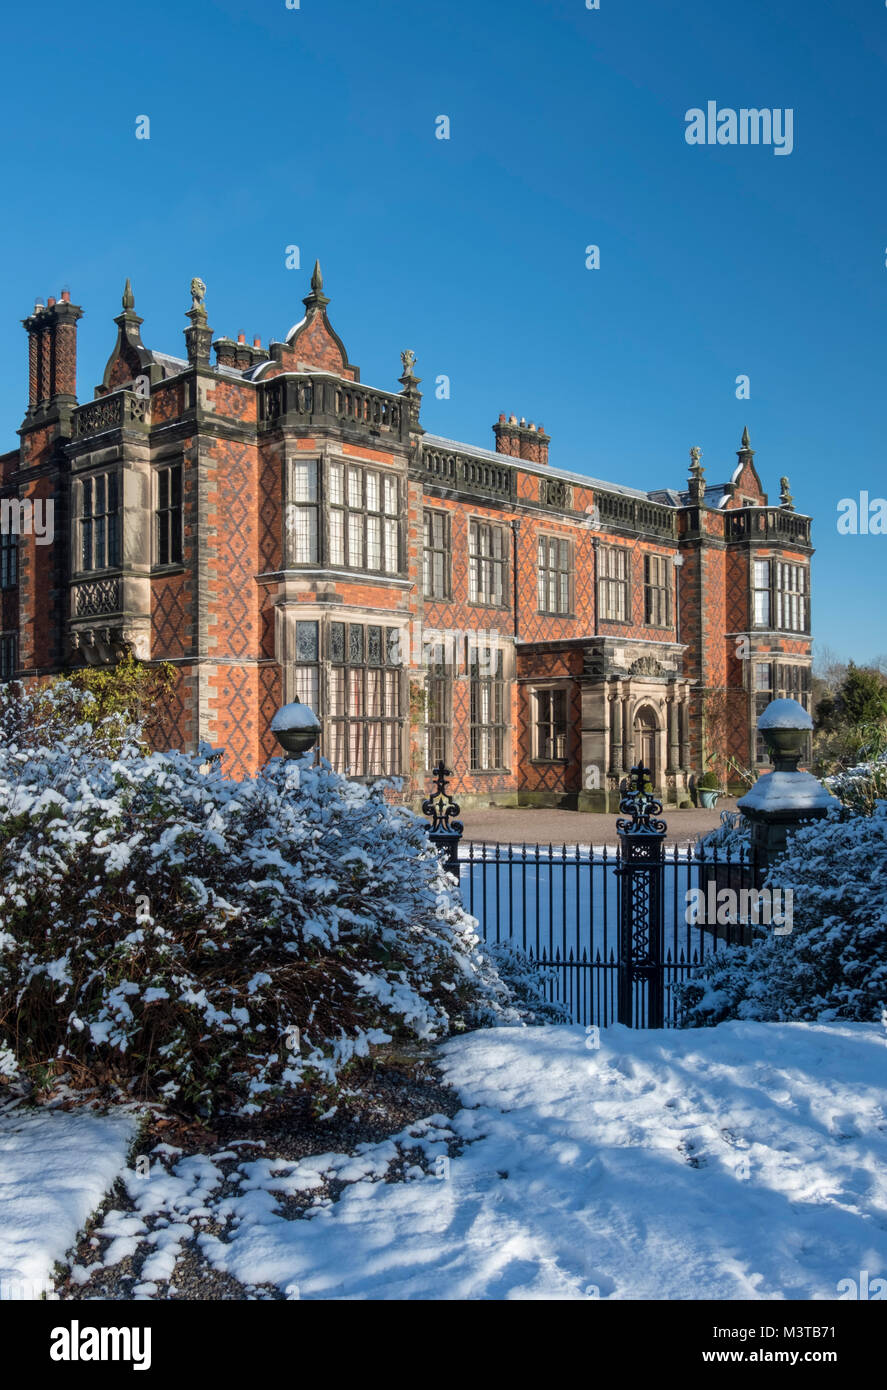 Arley Hall in inverno, Arley, vicino a Knutsford, Cheshire, Inghilterra, Regno Unito Foto Stock